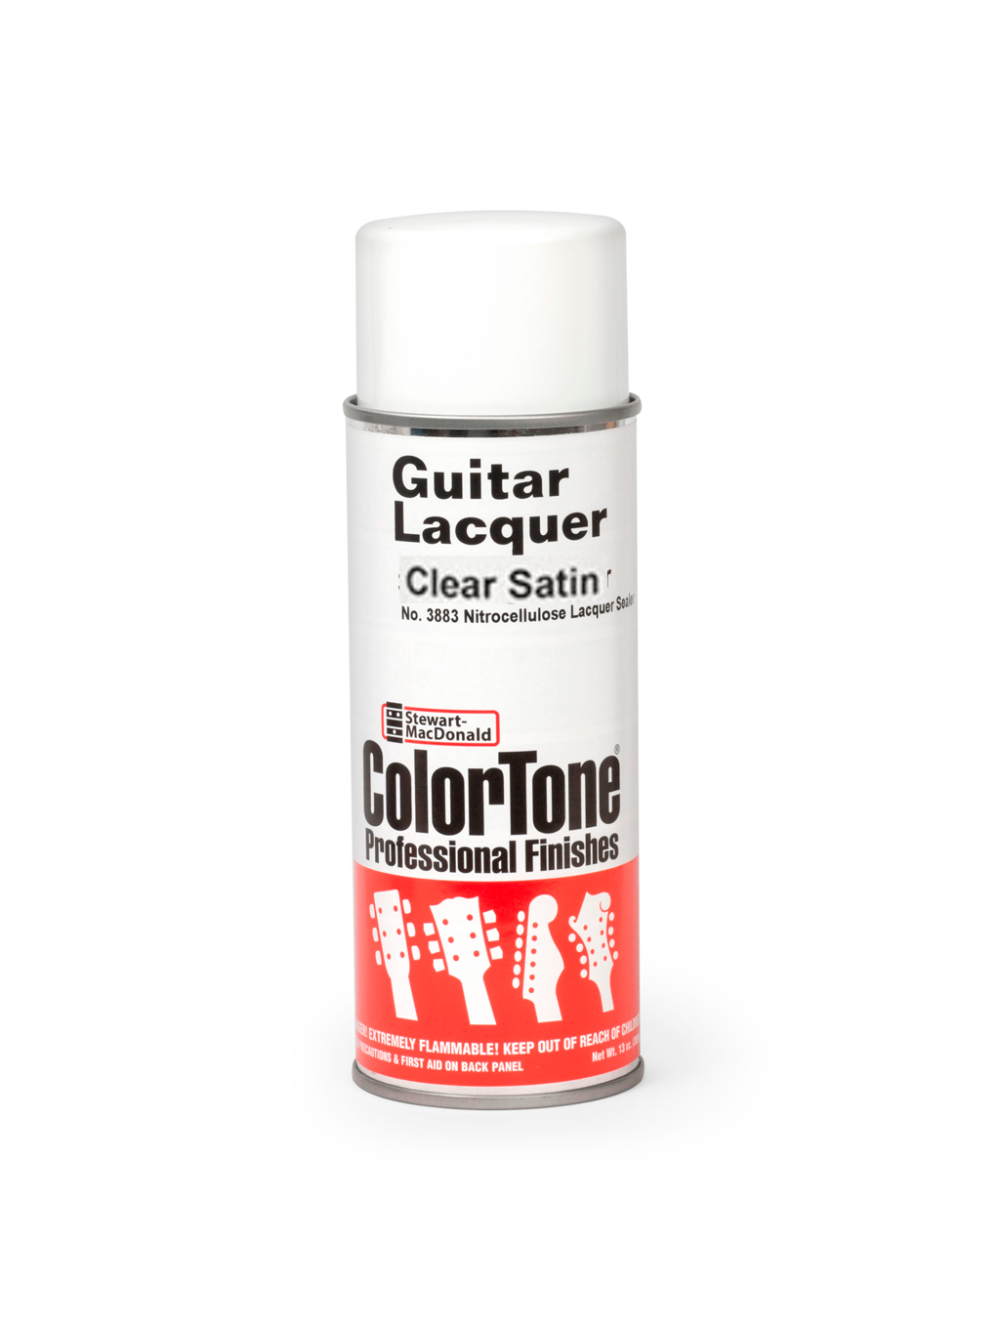 ColorTone Aerosol Guitar Lacquer, Clear Satin